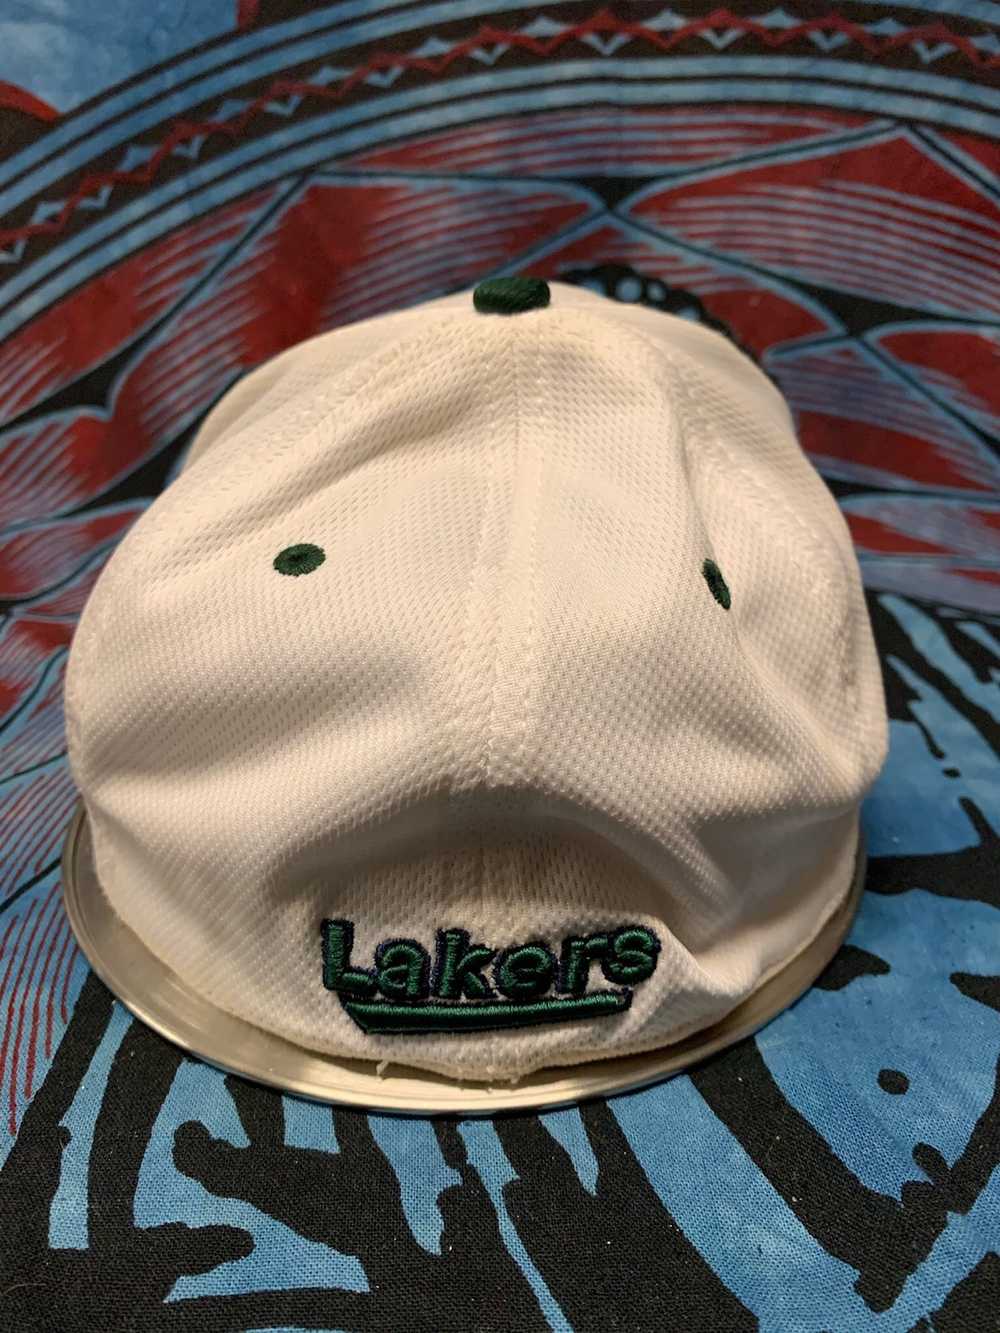 Vintage Lakers hat - image 2